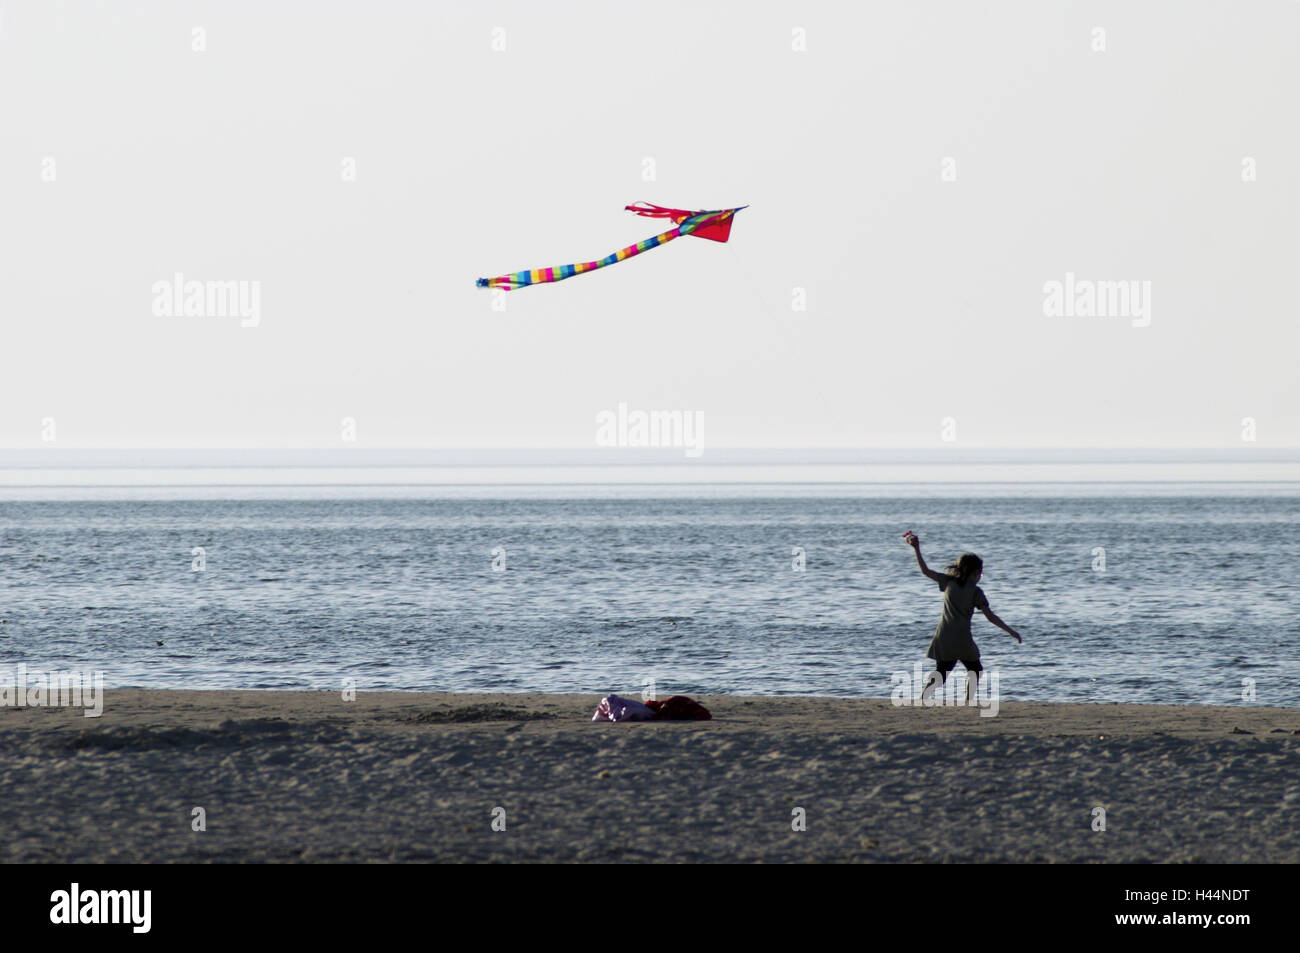 Spiaggia, bambino, kite, eseguire nessun modello di rilascio, Foto Stock